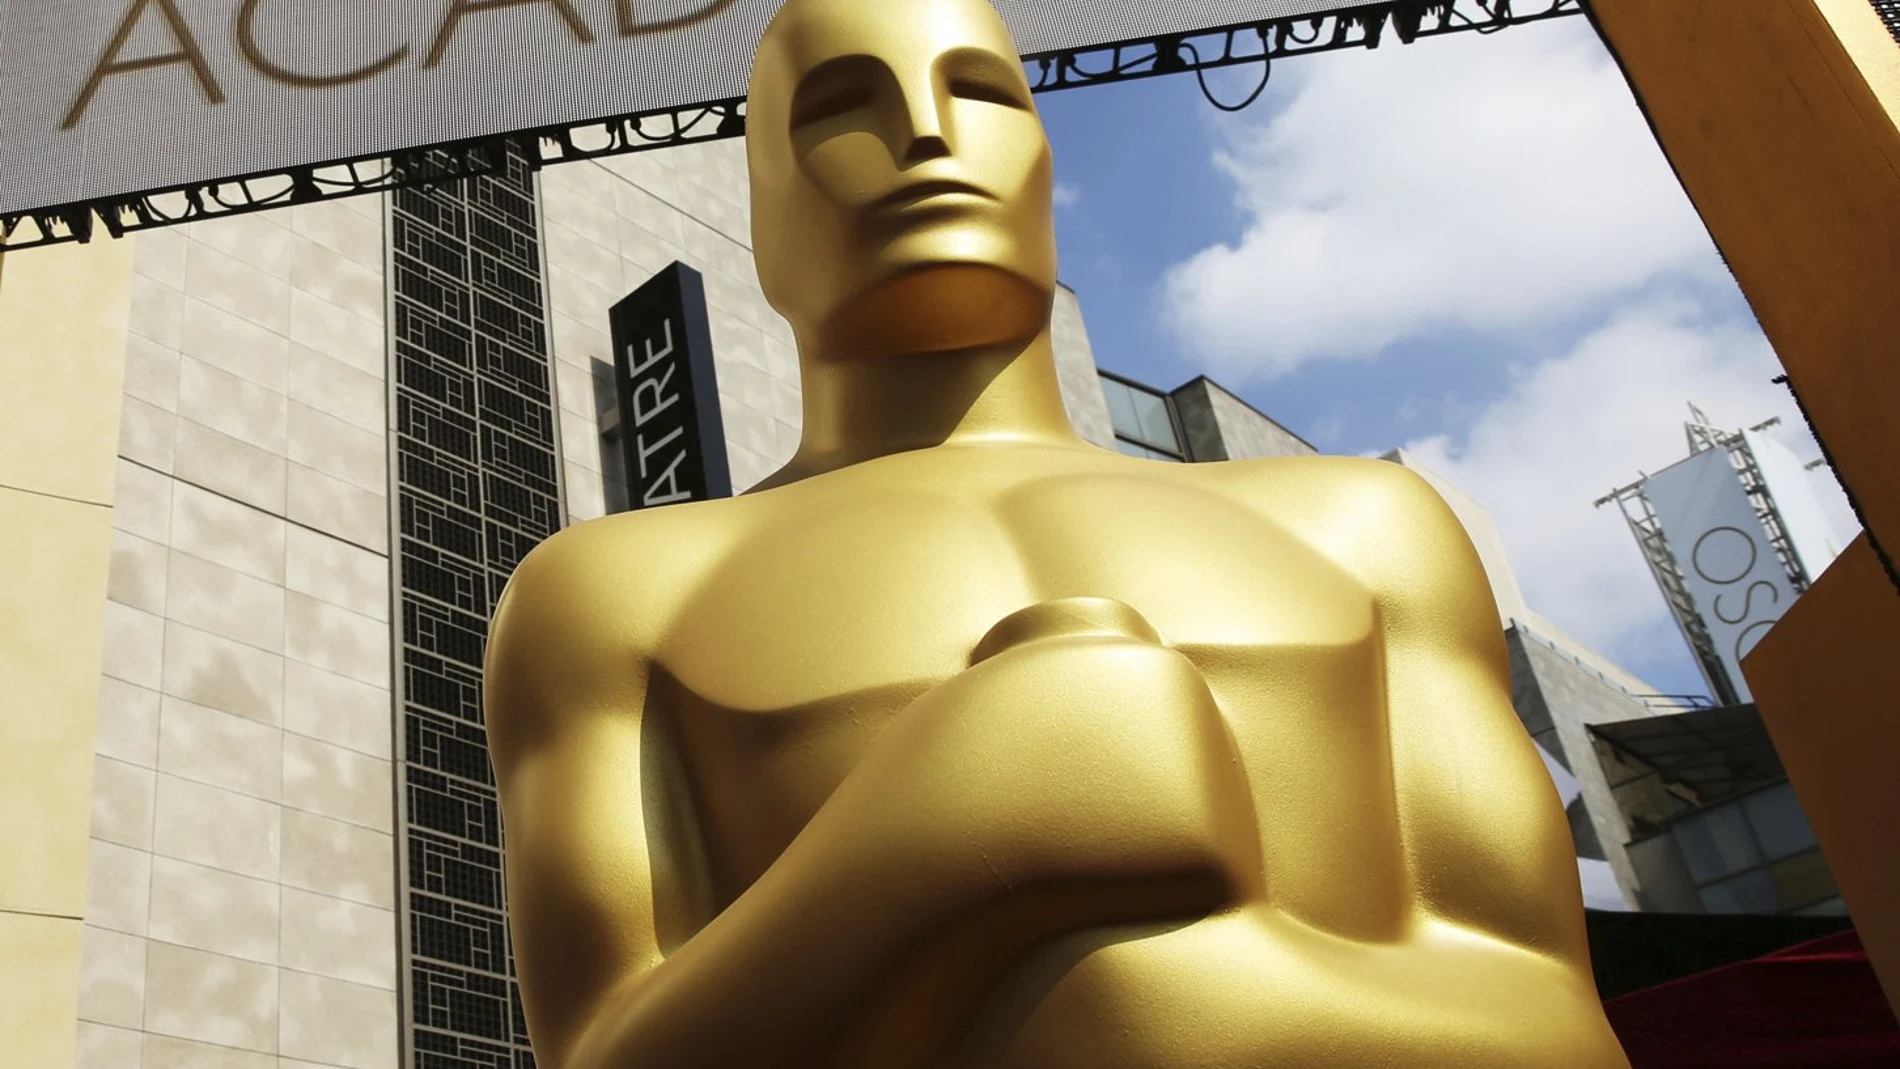 El Dolby Theatre de Los Ángeles acoge la 93ª edición de los Oscar